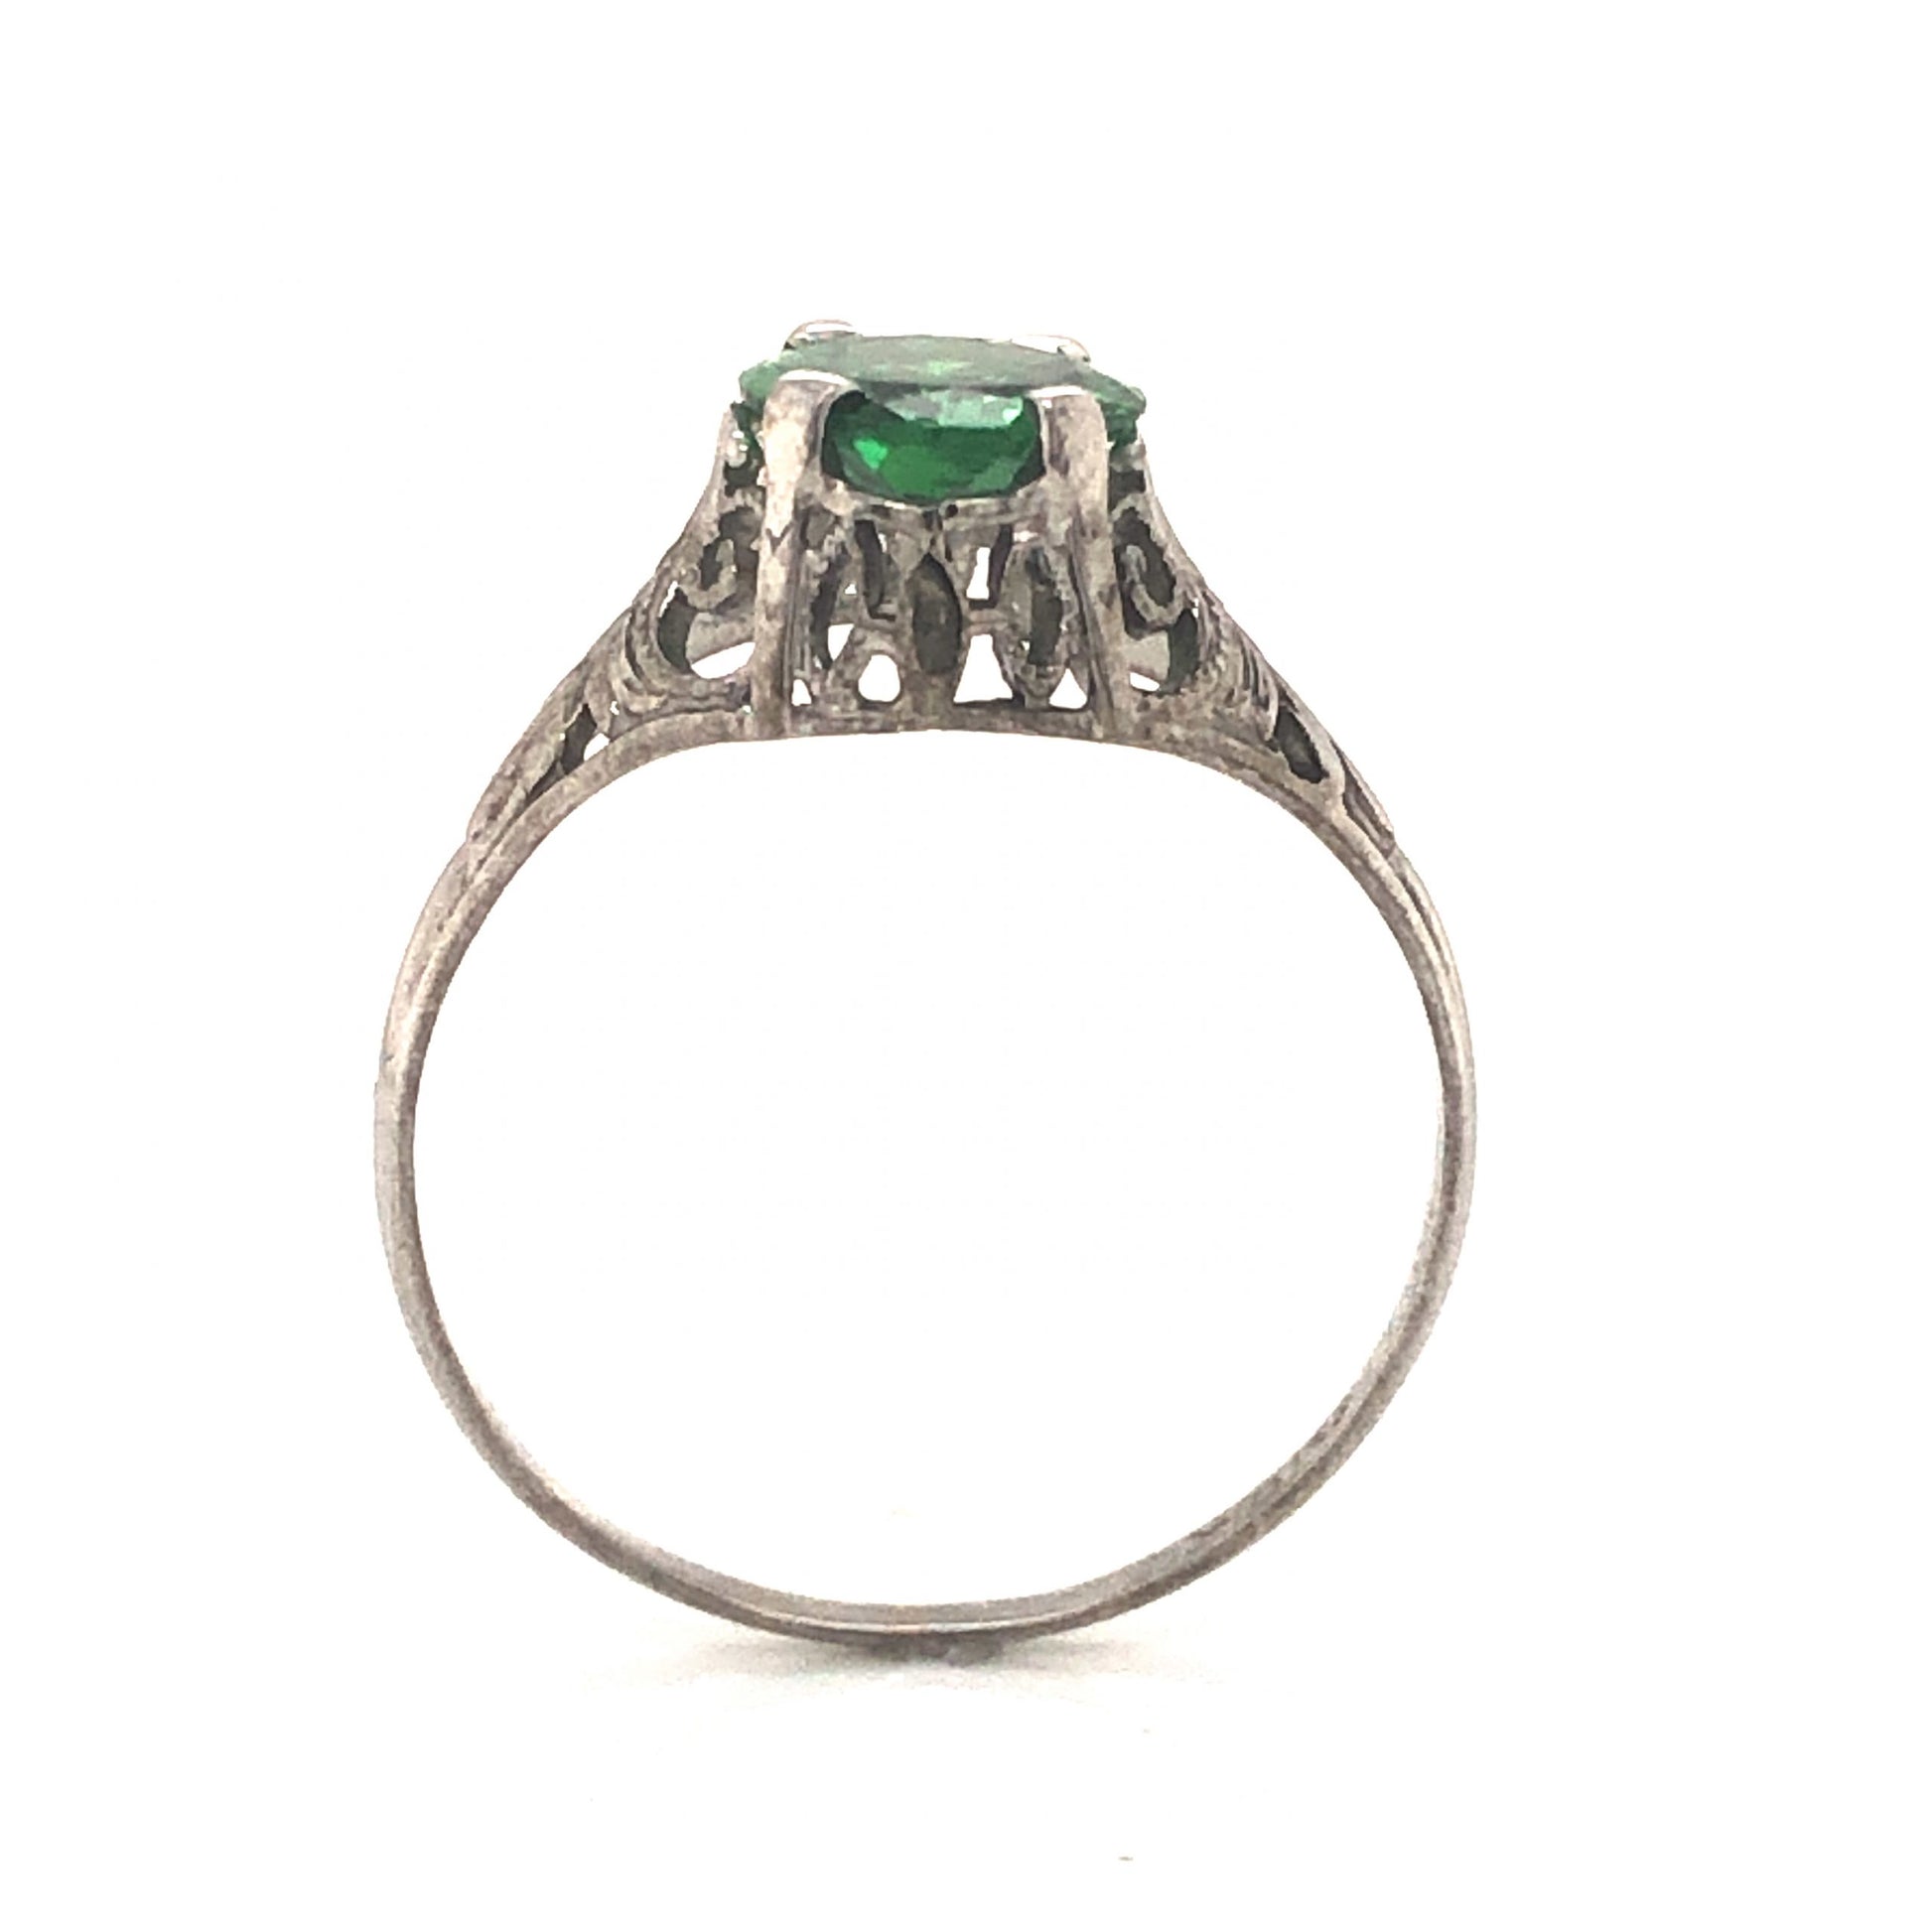 Art Deco Tsavorite Garnet Engagement Ring in 18k White GoldComposition: 18 Karat White Gold Ring Size: 7 Total Gram Weight: 2.0 g Inscription: 18kt
      